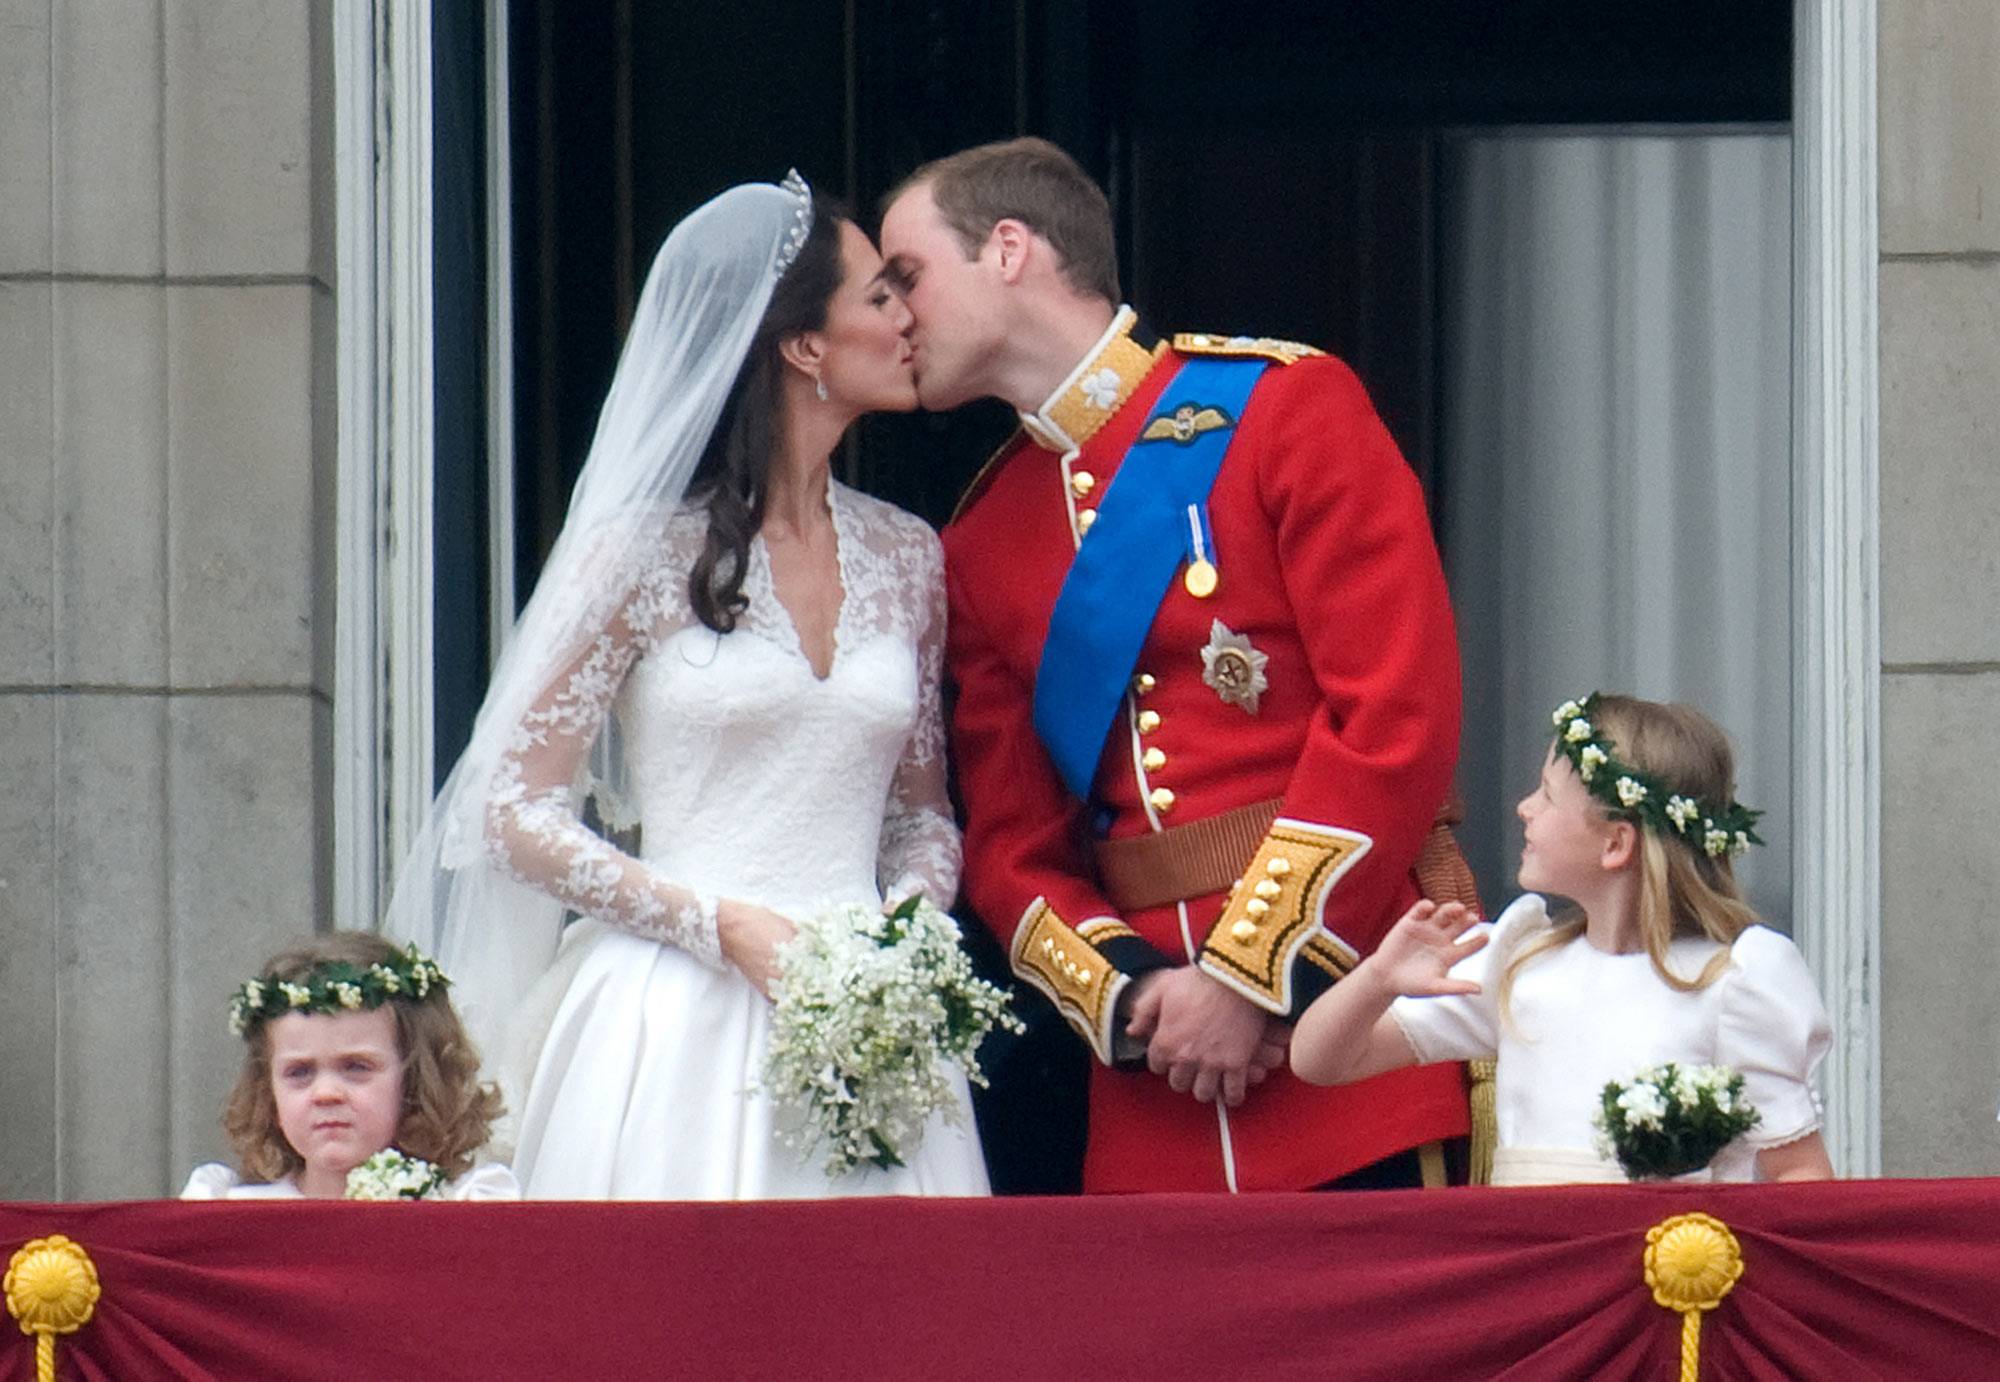 Ślub księcia Williama i Kate Middleton, 29.04.2011, (Fot Anwar Hussein/WireImage)